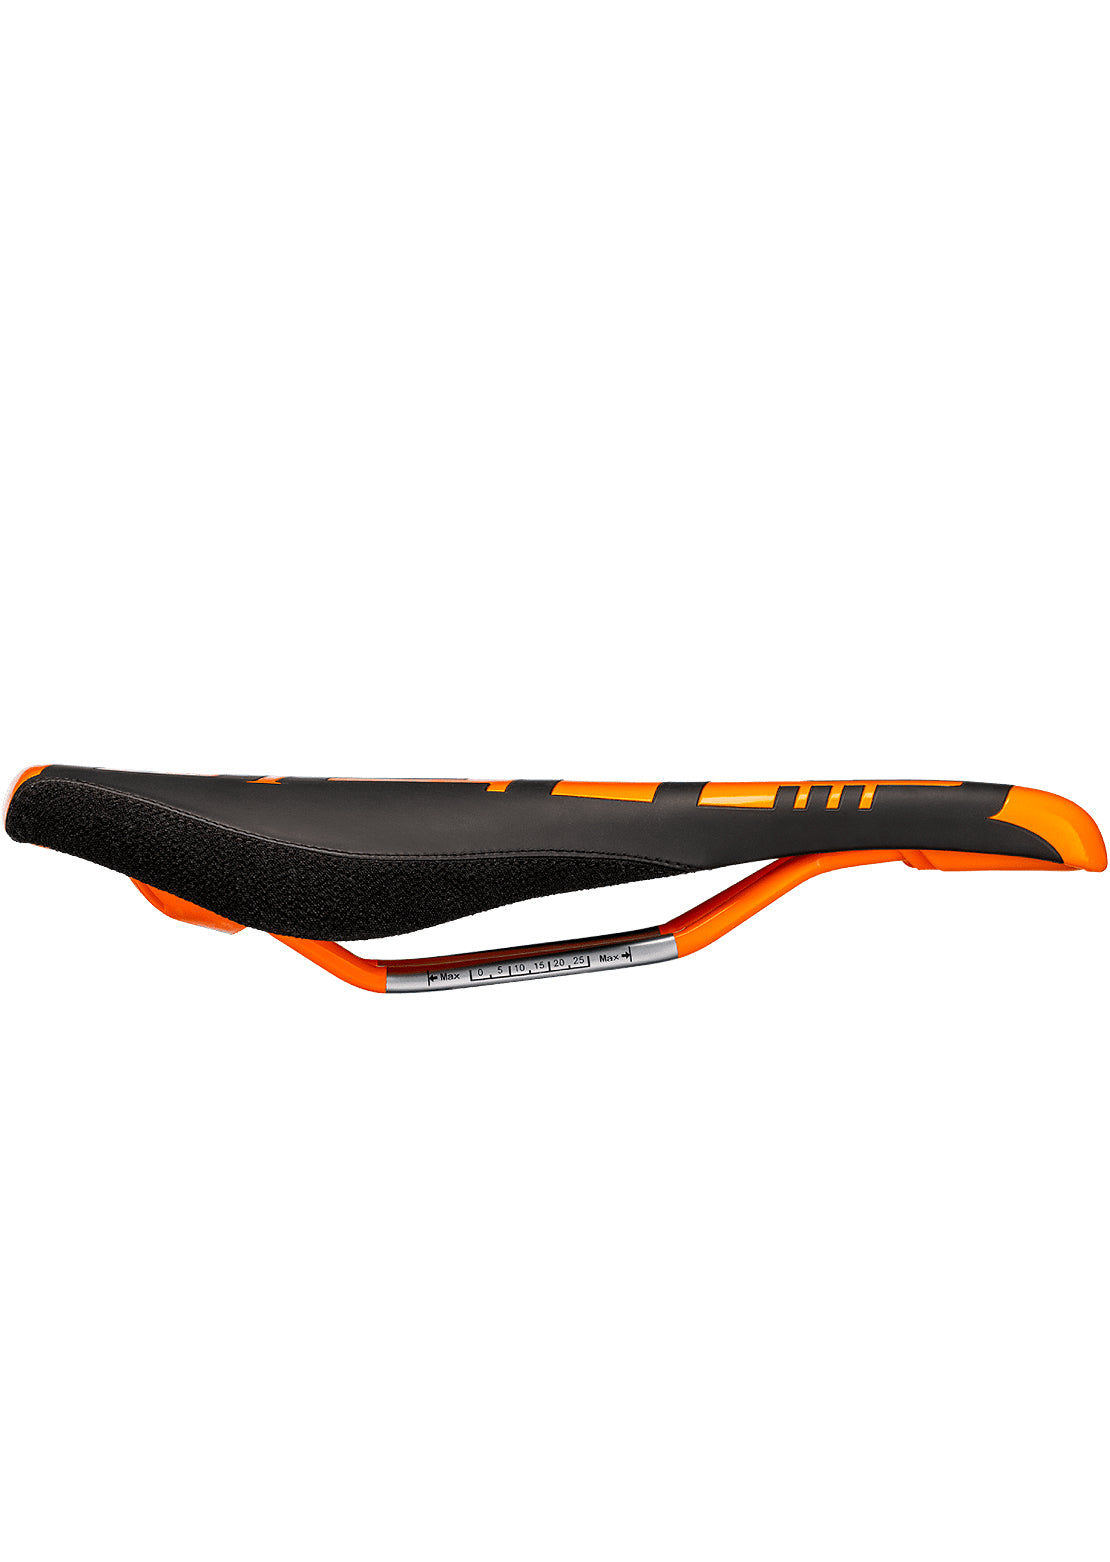 Deity Unisex Speedtrap AM Cr-Mo Saddle Orange